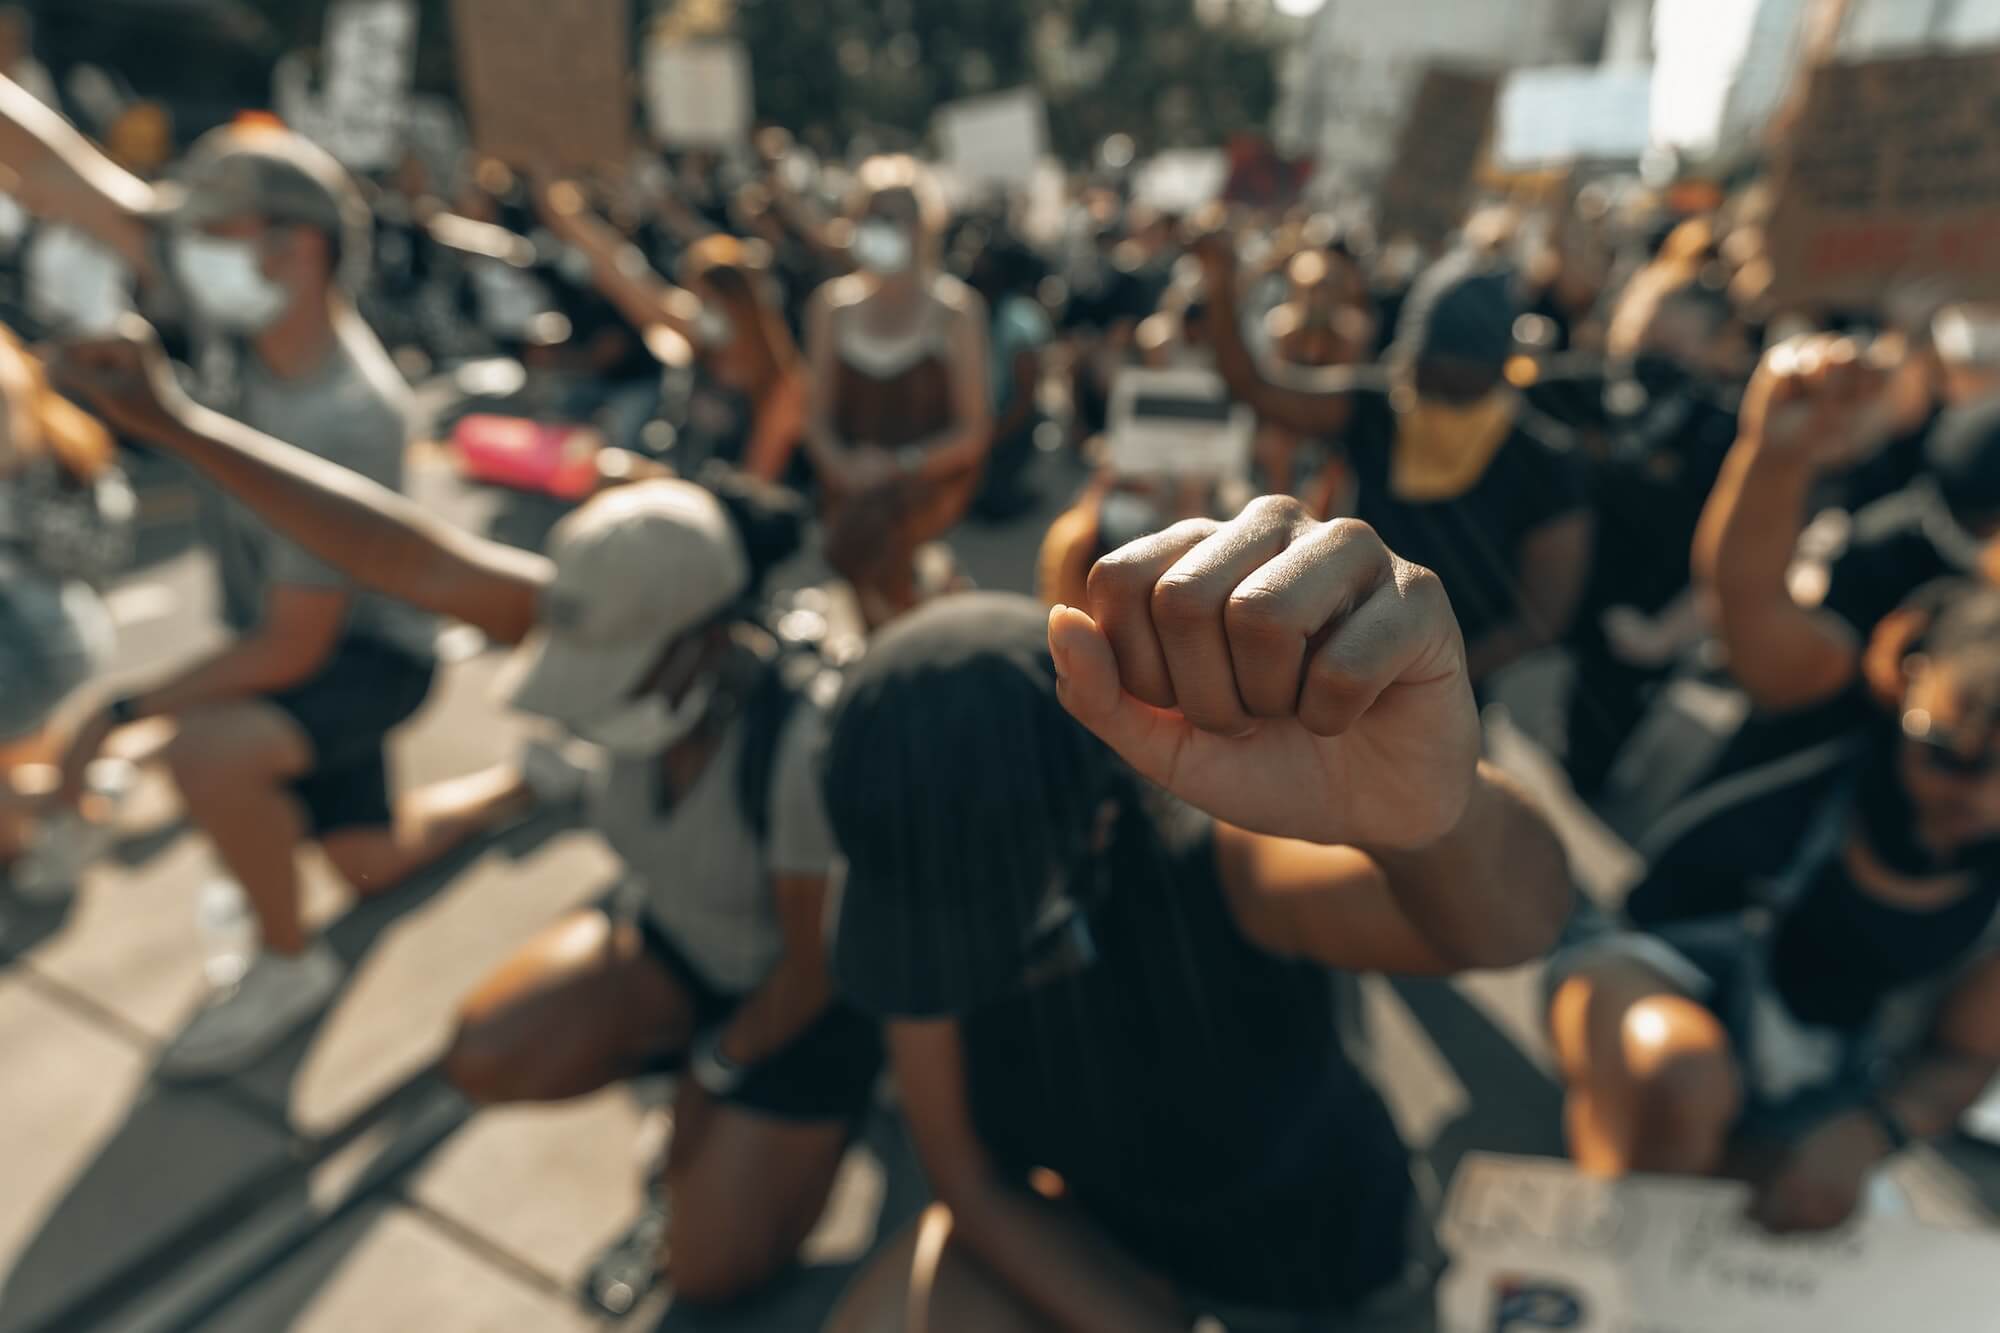 Protestors kneeling with raised fists